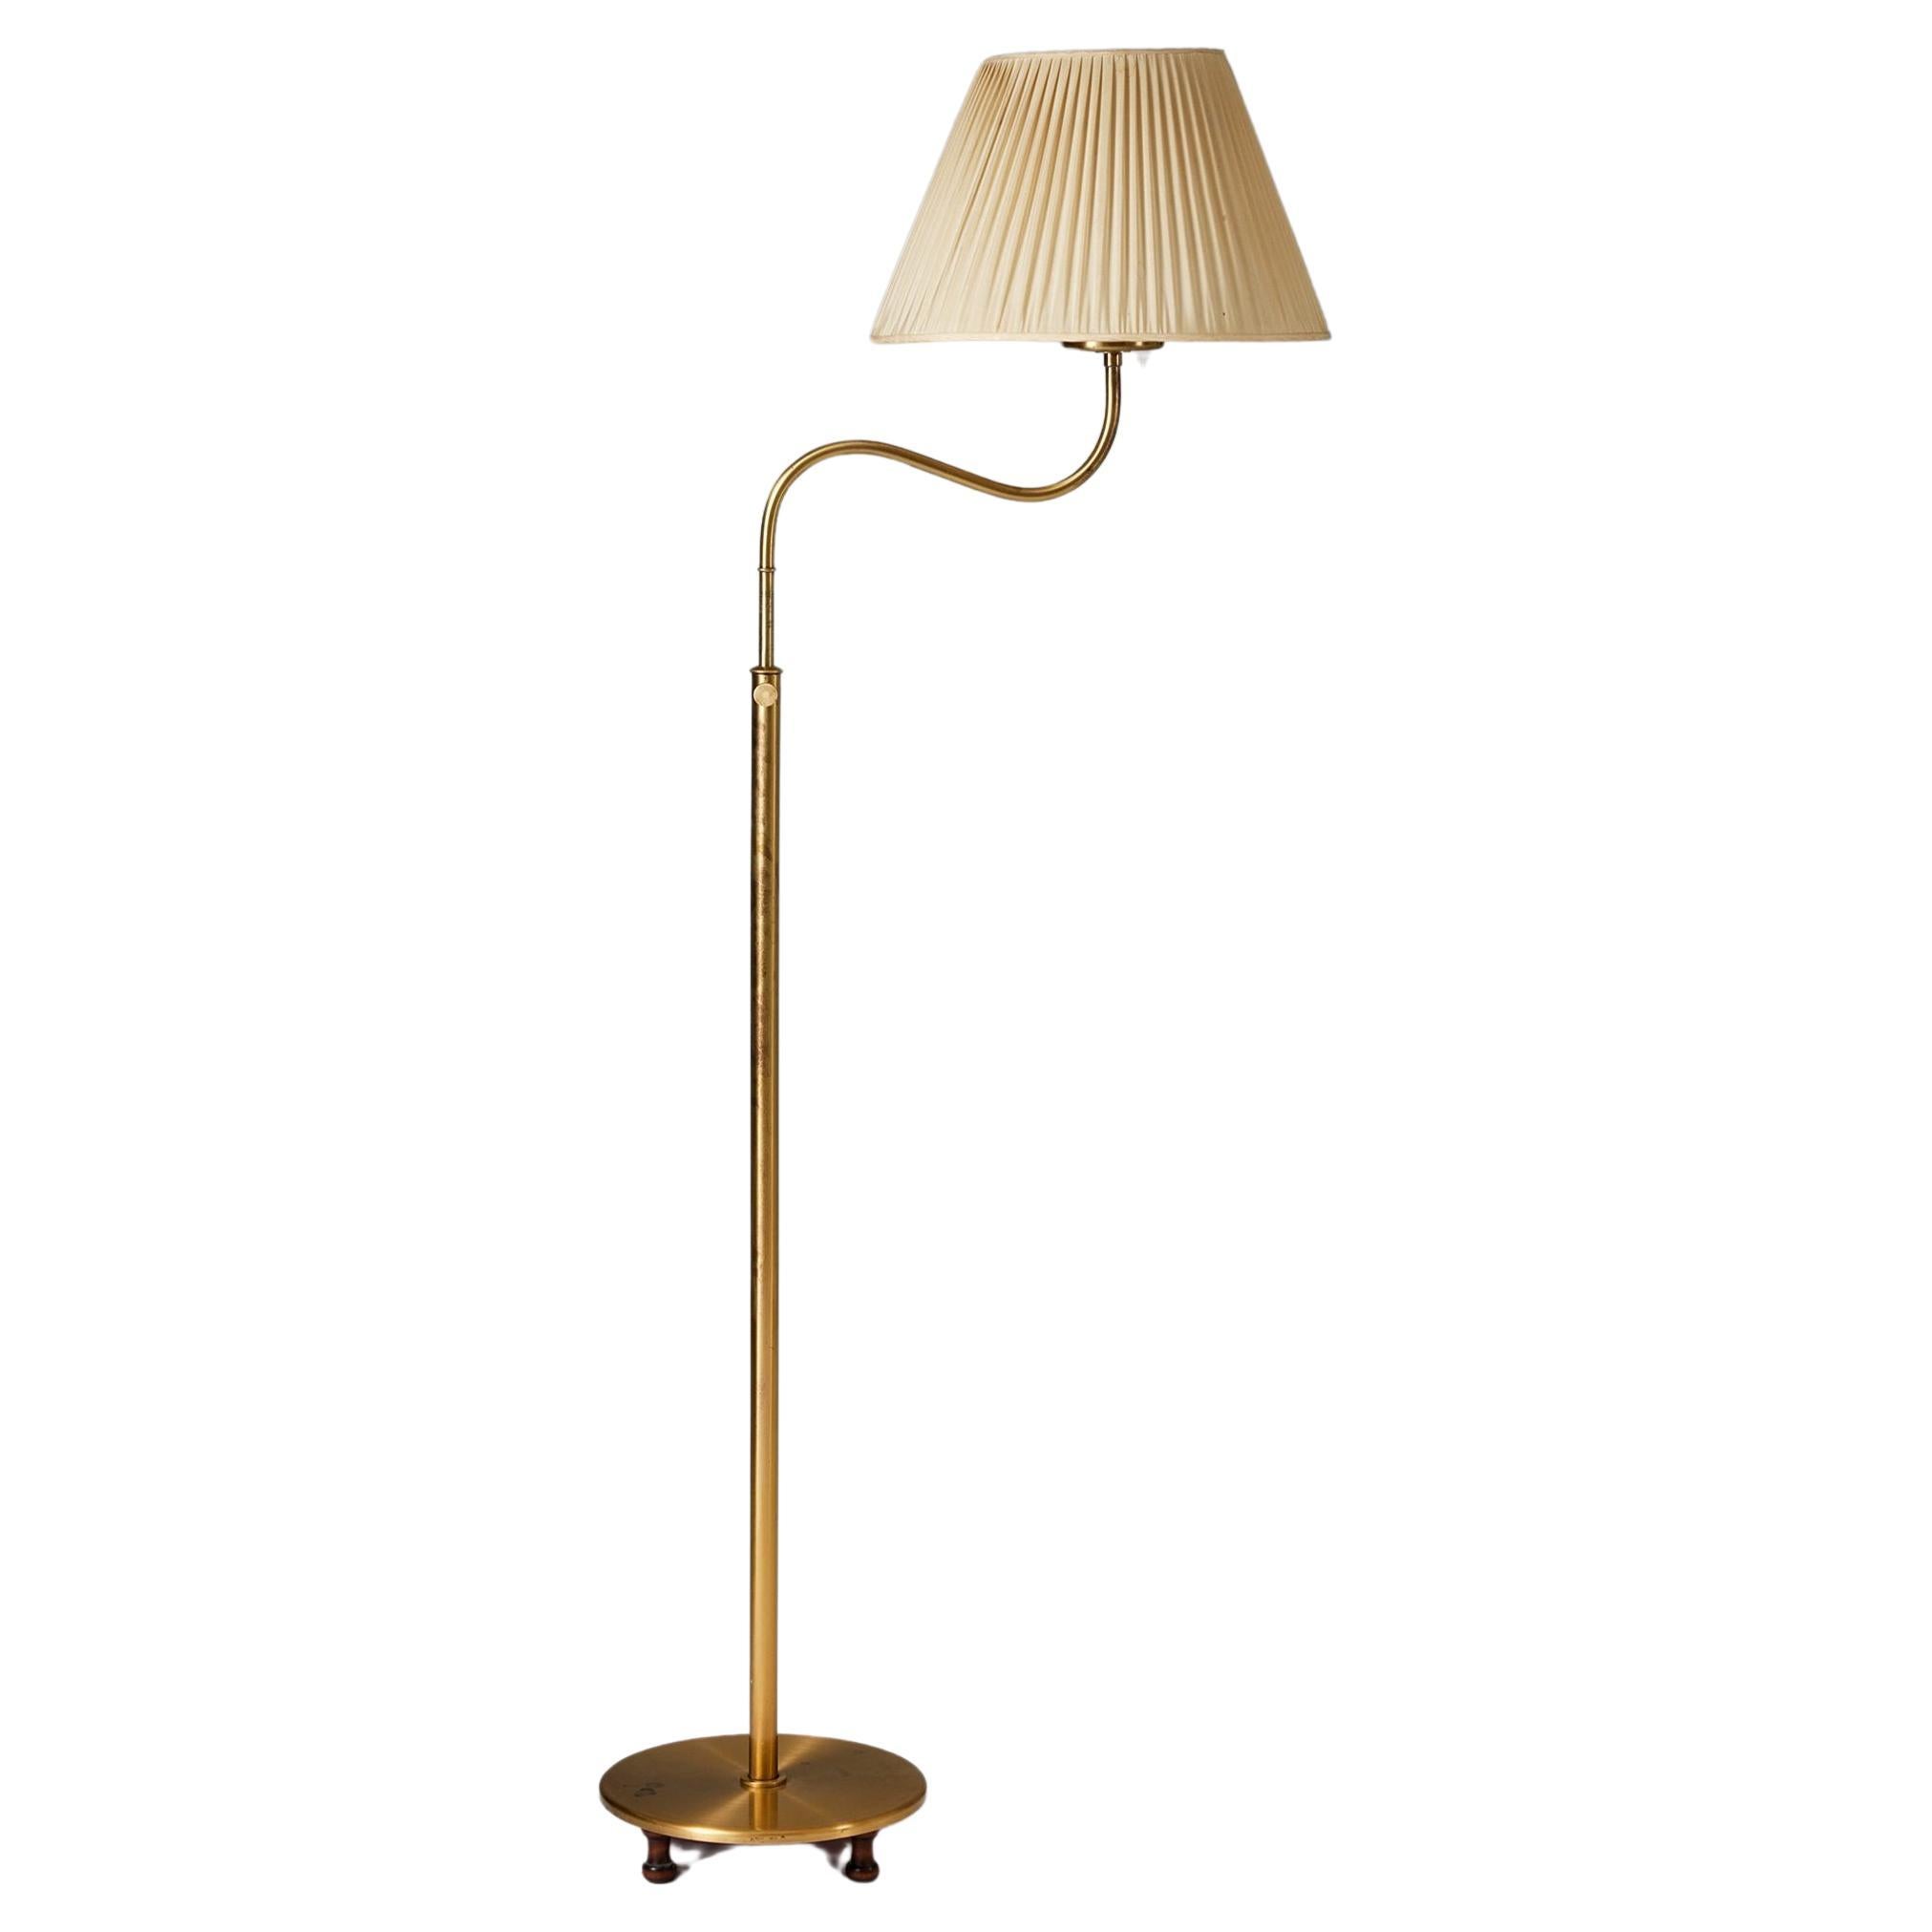 Brass floor lamp �‘Small Camel’ model 2568 by Josef Frank for Svenskt Tenn, 1939